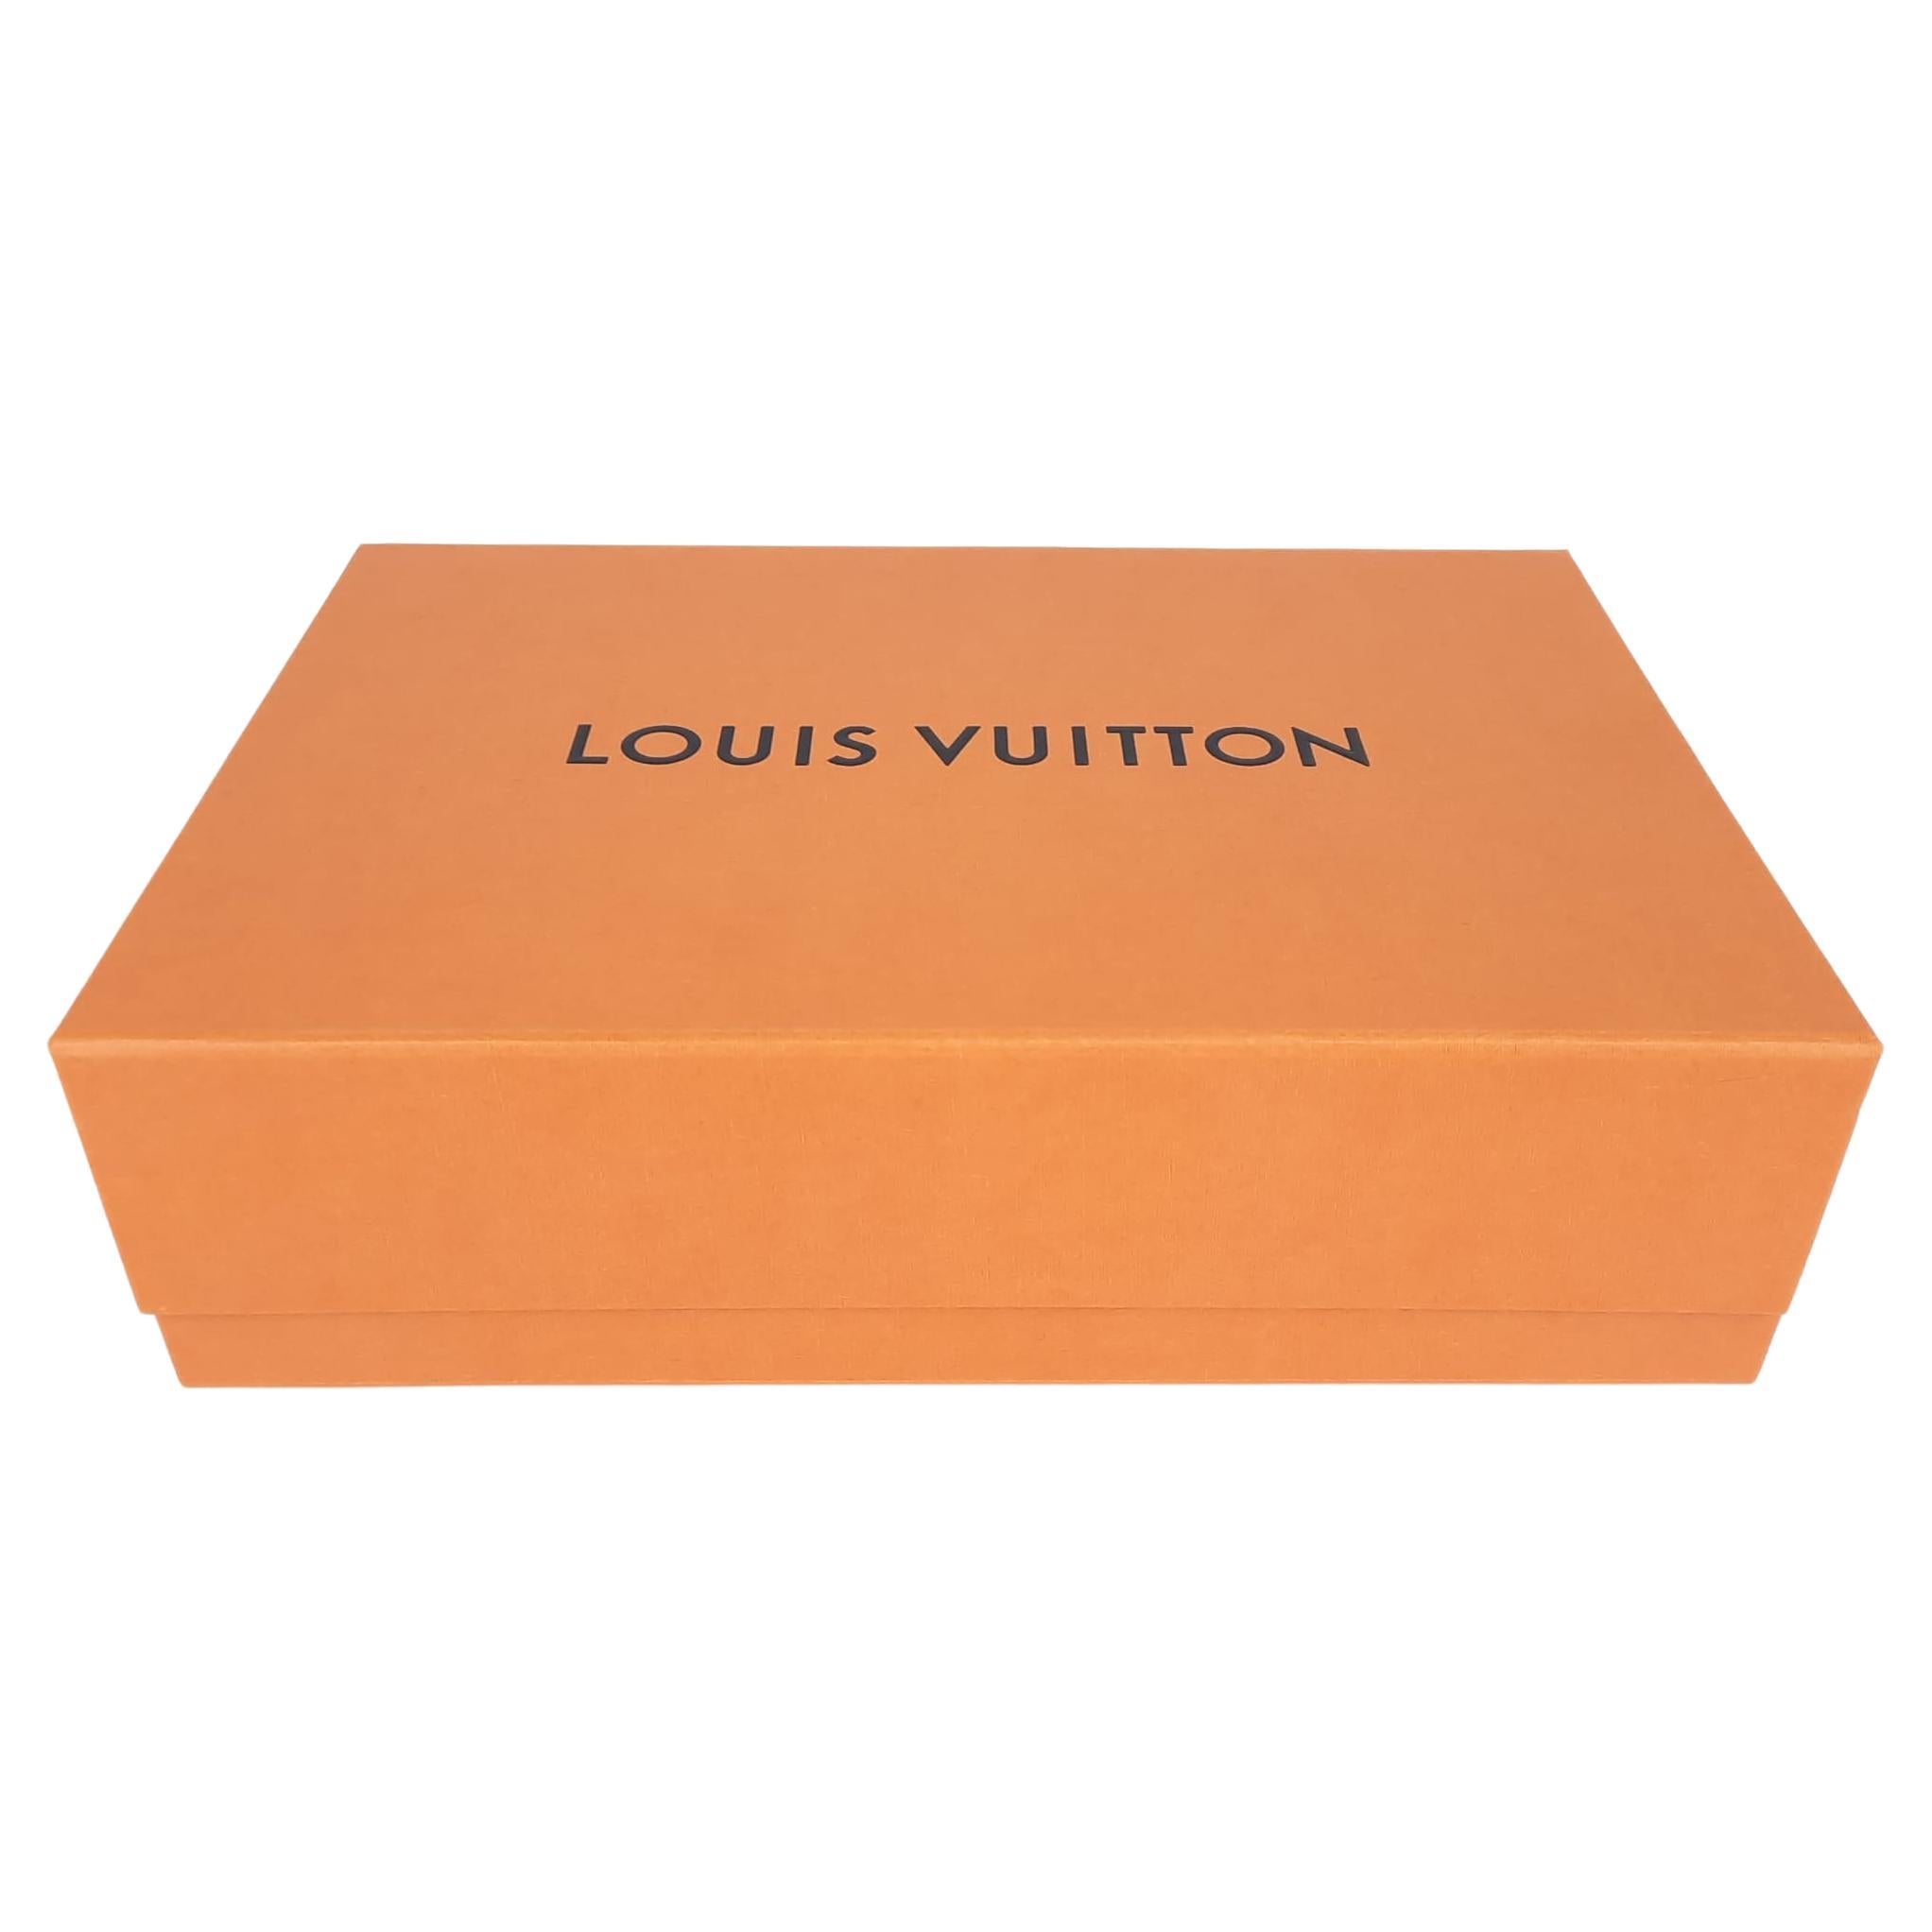 Louis Vuitton tung ra mẫu rương đựng giày xịn đét giờ đây việc bảo quản  giày cứ phải gọi là ở  cái  tầm